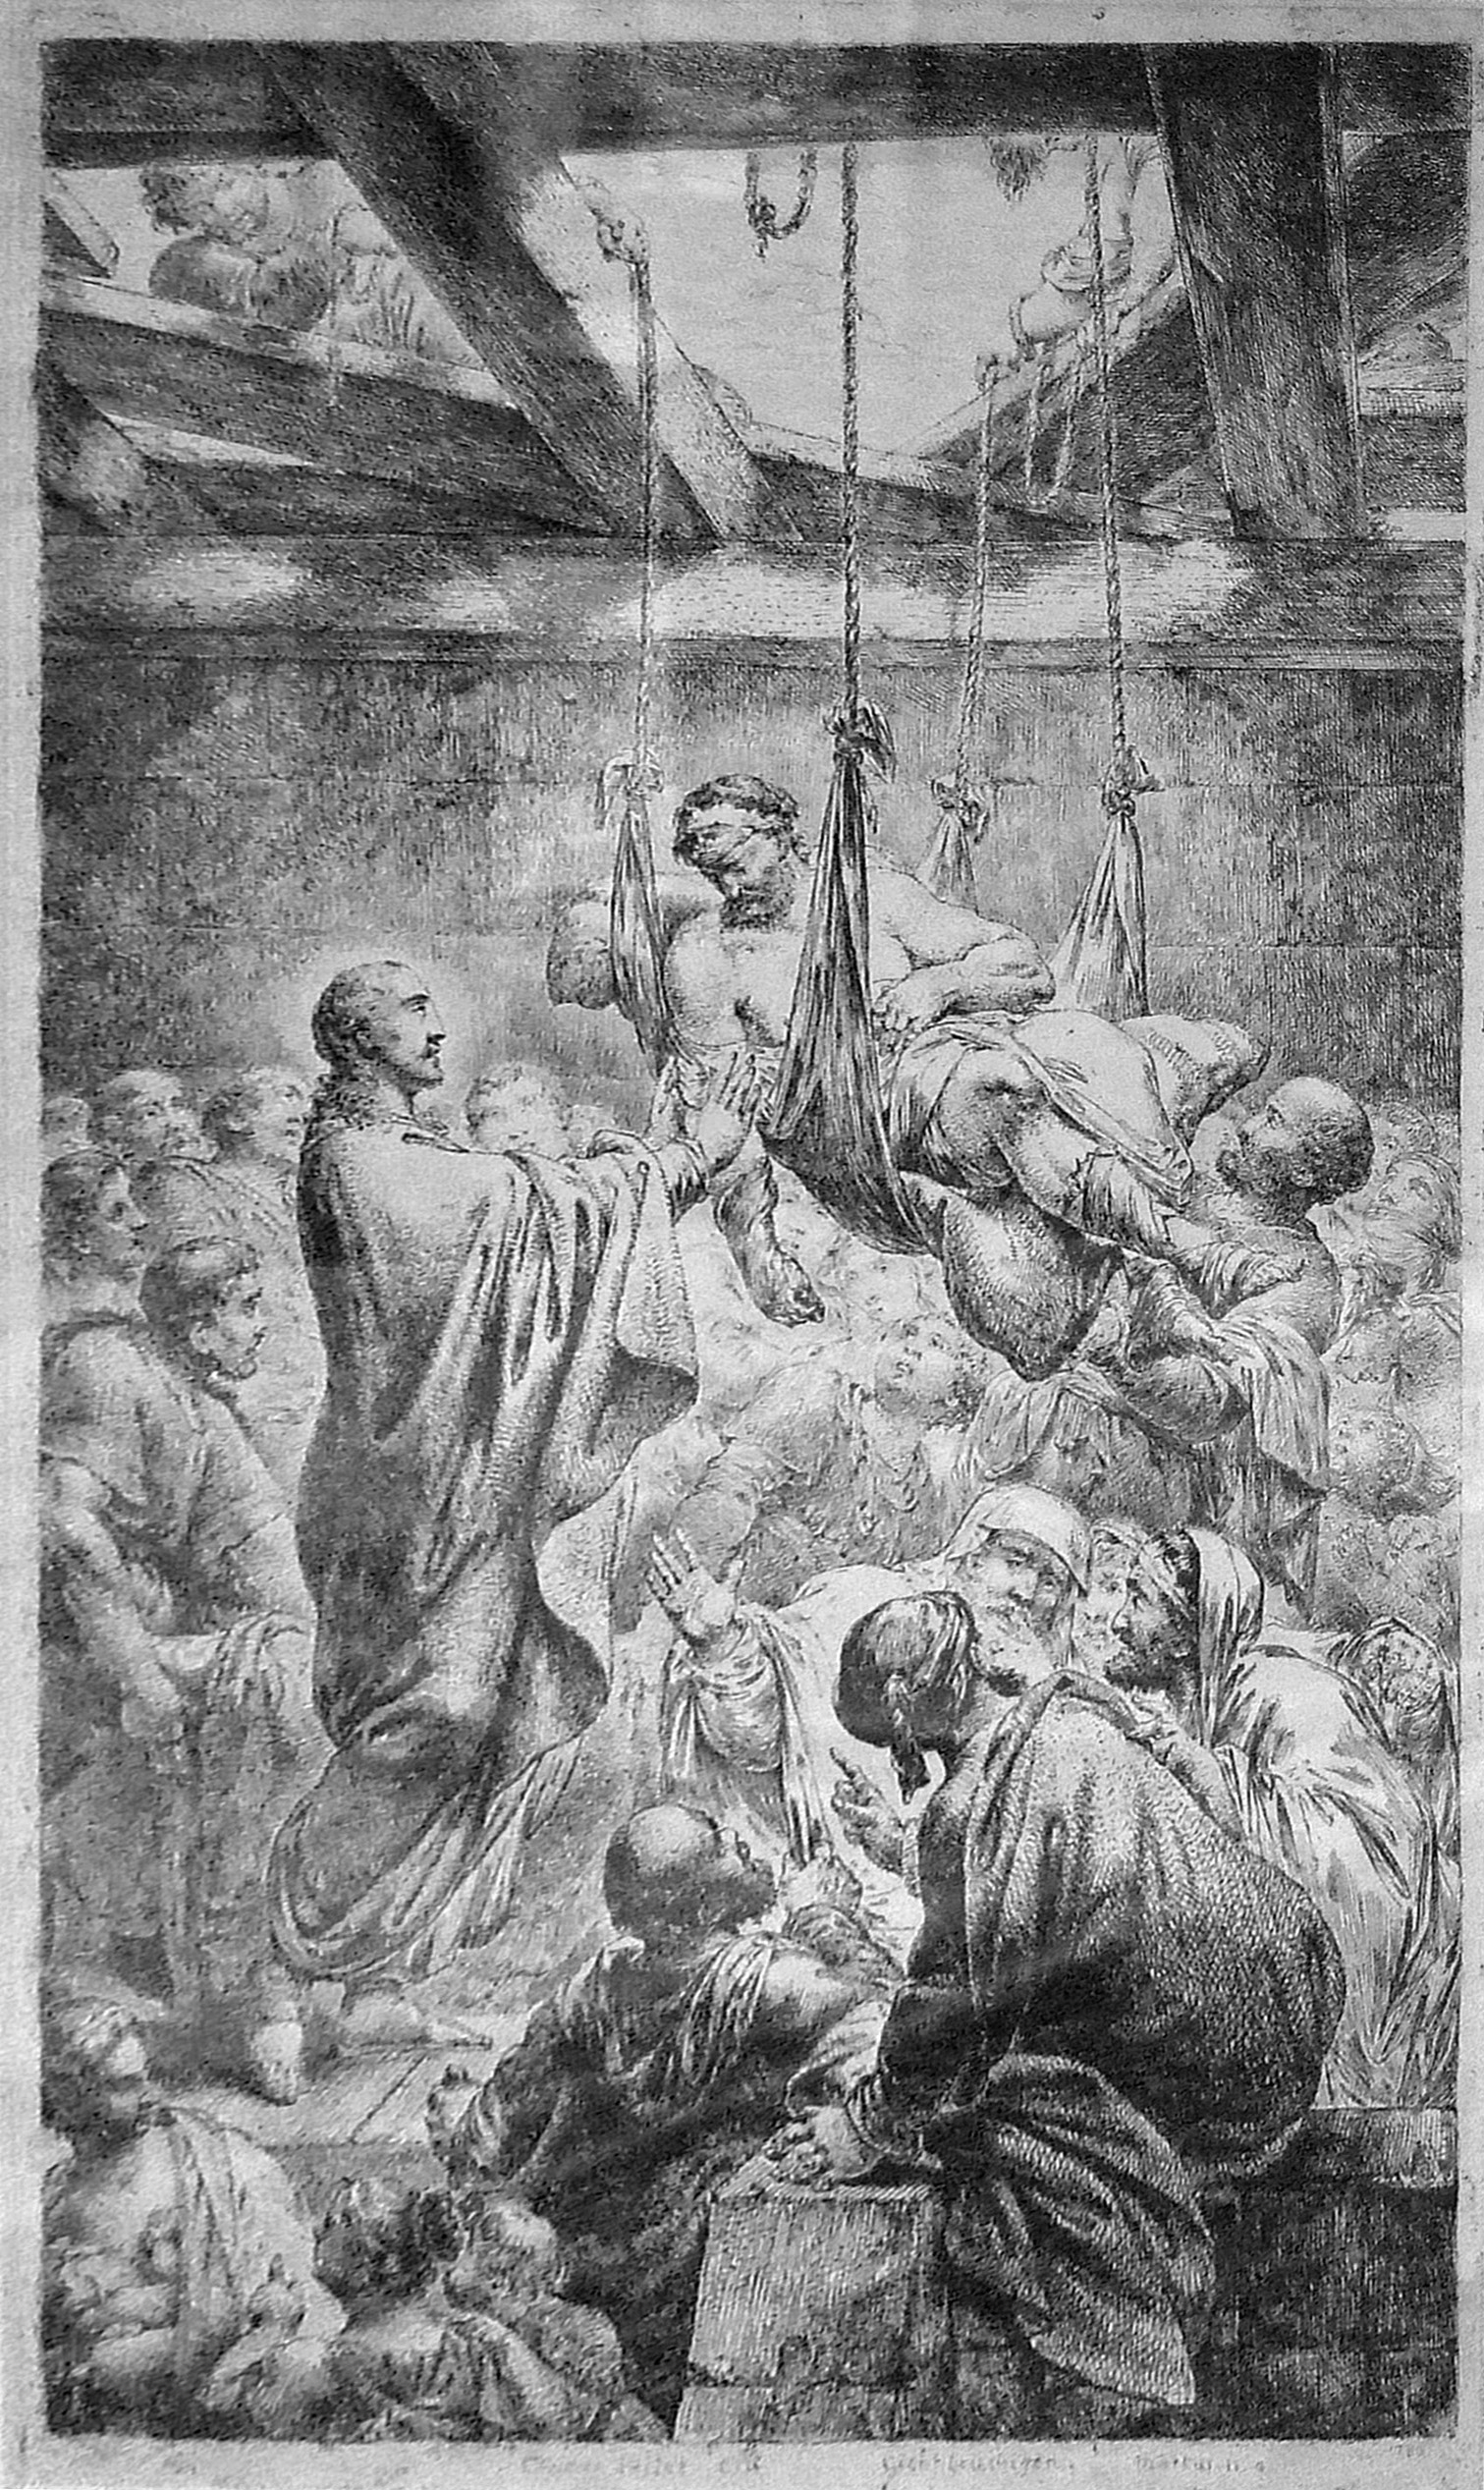 Engraving of Jesus healing paralyzed man